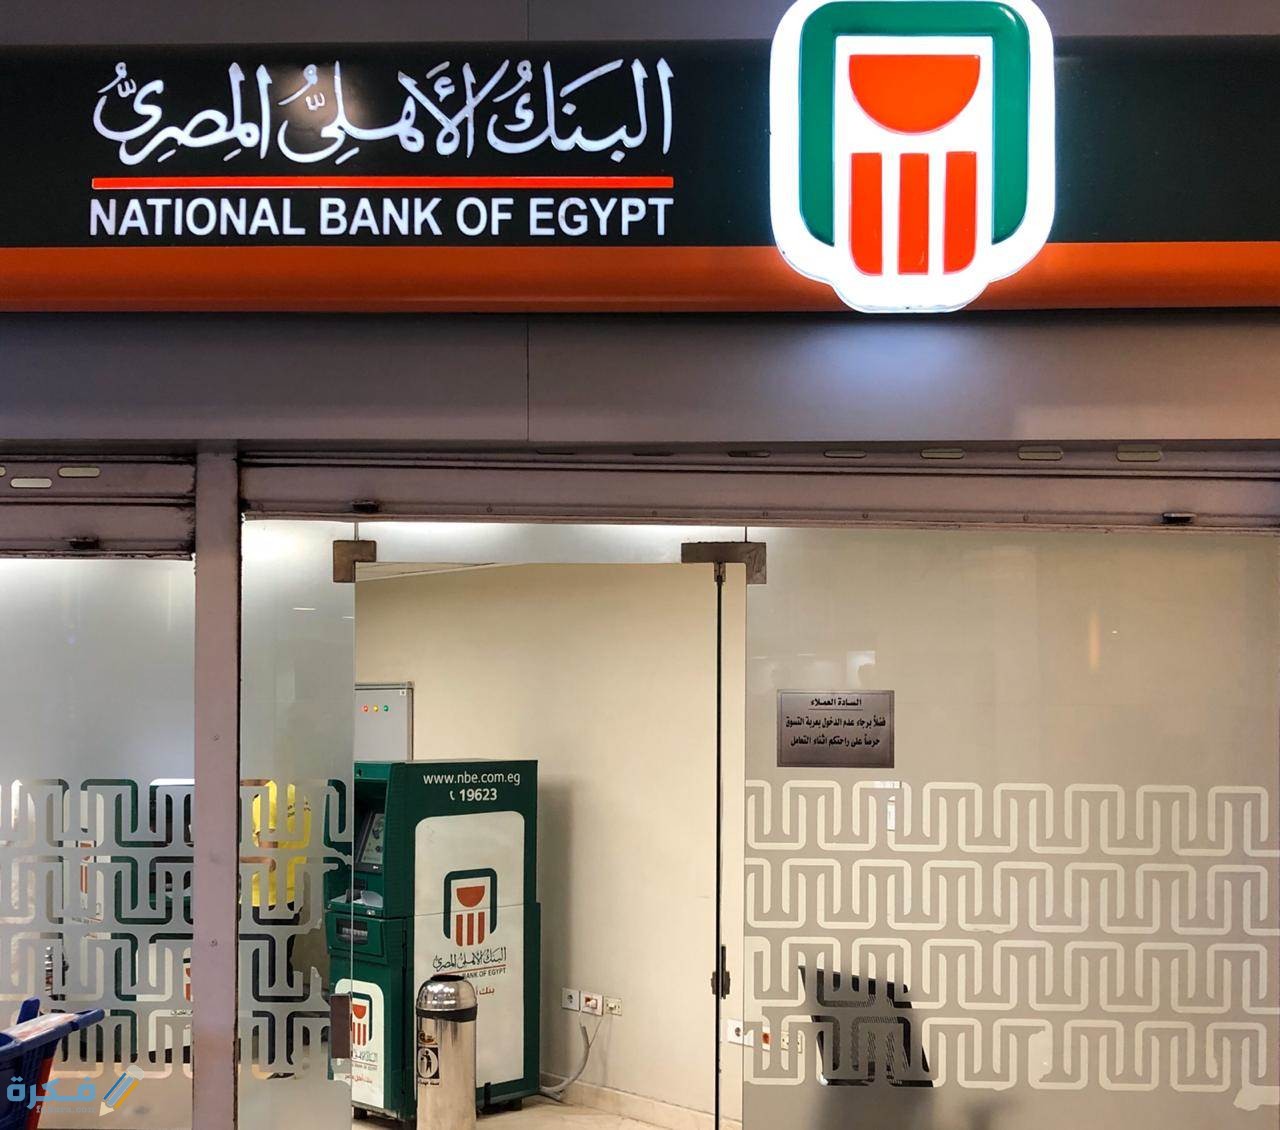 مواعيد عمل البنك الاهلي المصري 2021 موقع فكرة